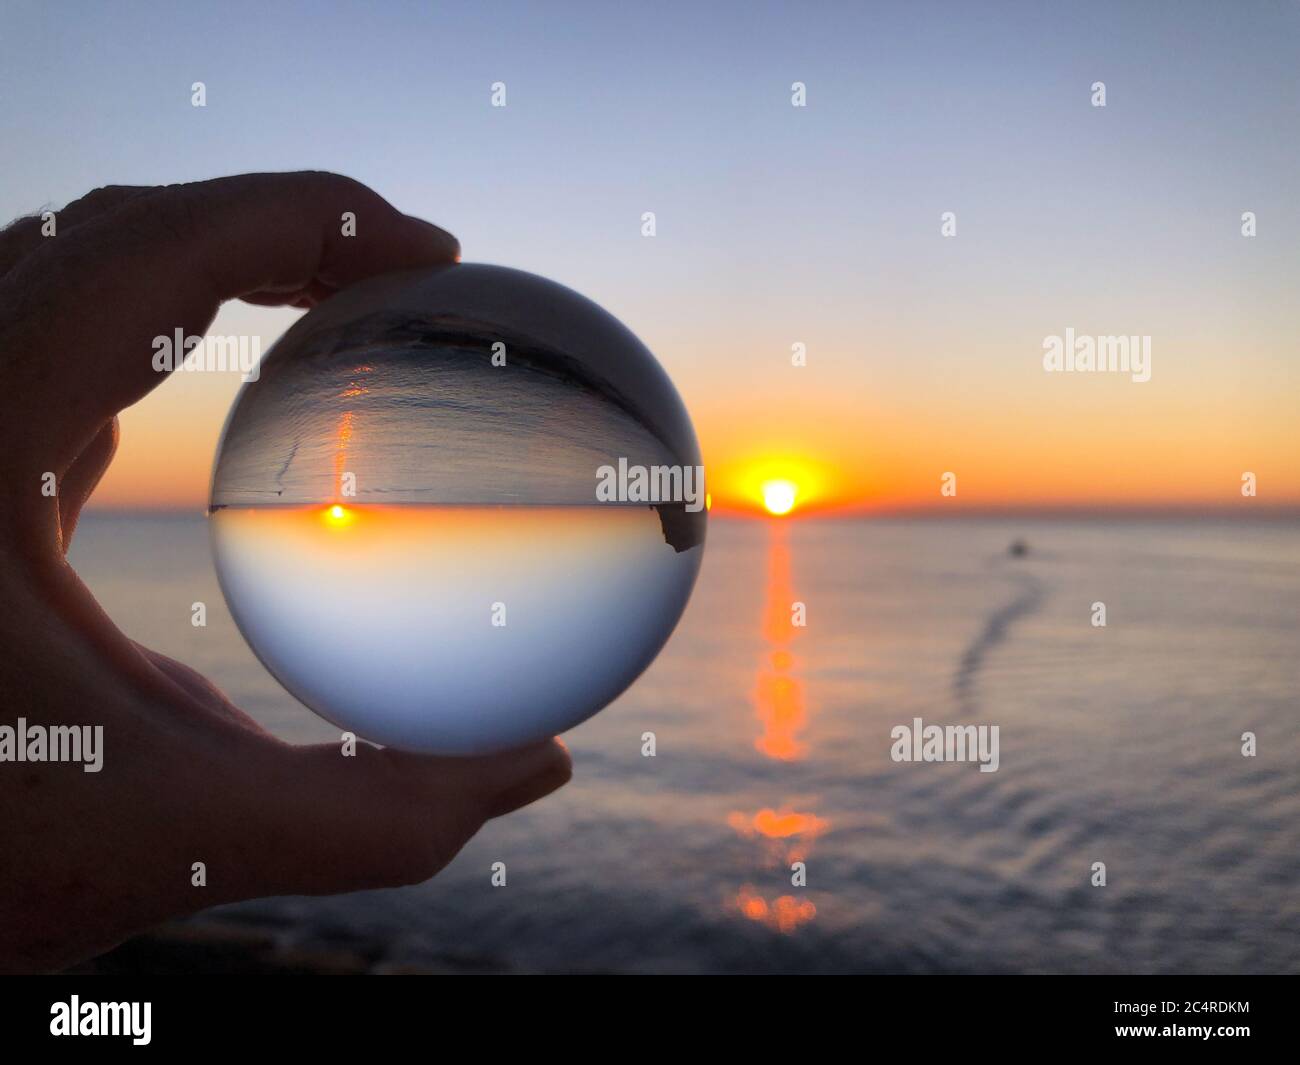 Main de femme tenant une boule de cristal, regardant à travers la mer et le ciel à l'aube. Concept créatif, voyage de rêve. Photographie de réfraction de boule de cristal Banque D'Images